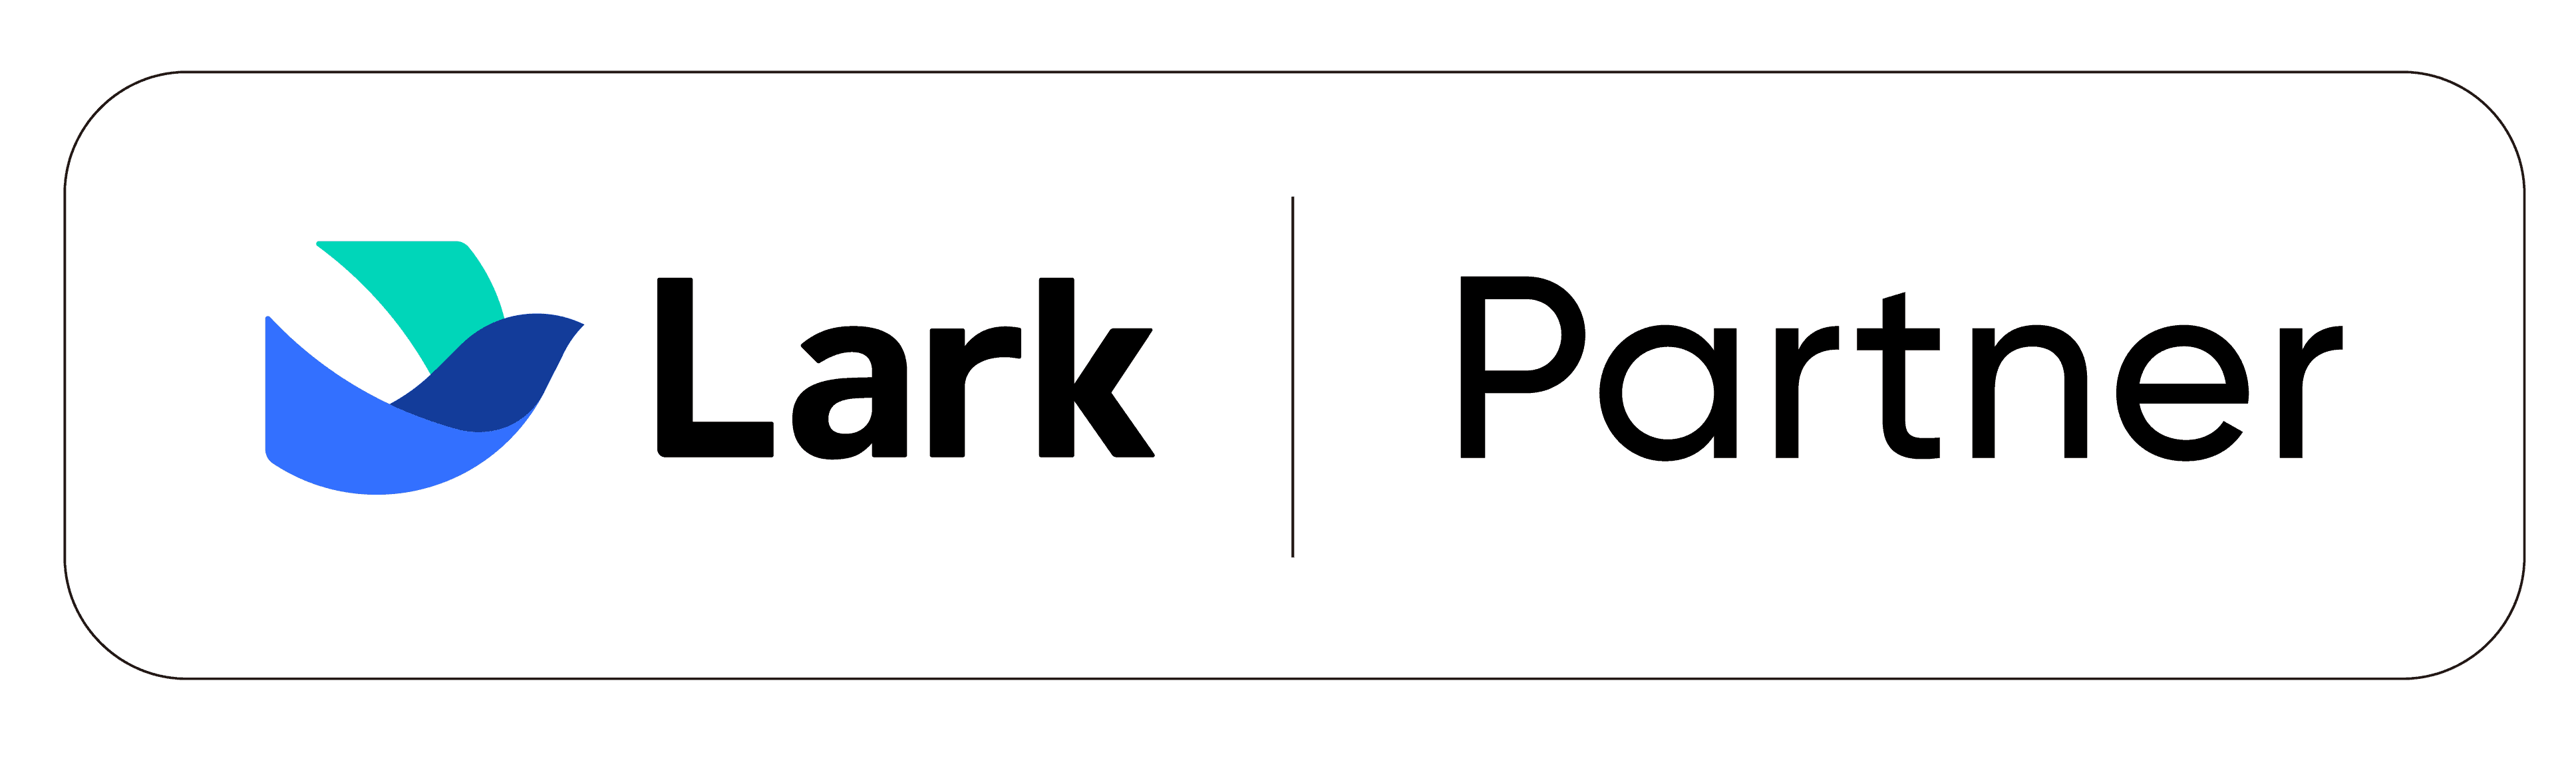 Lark Partner logo 2022-02